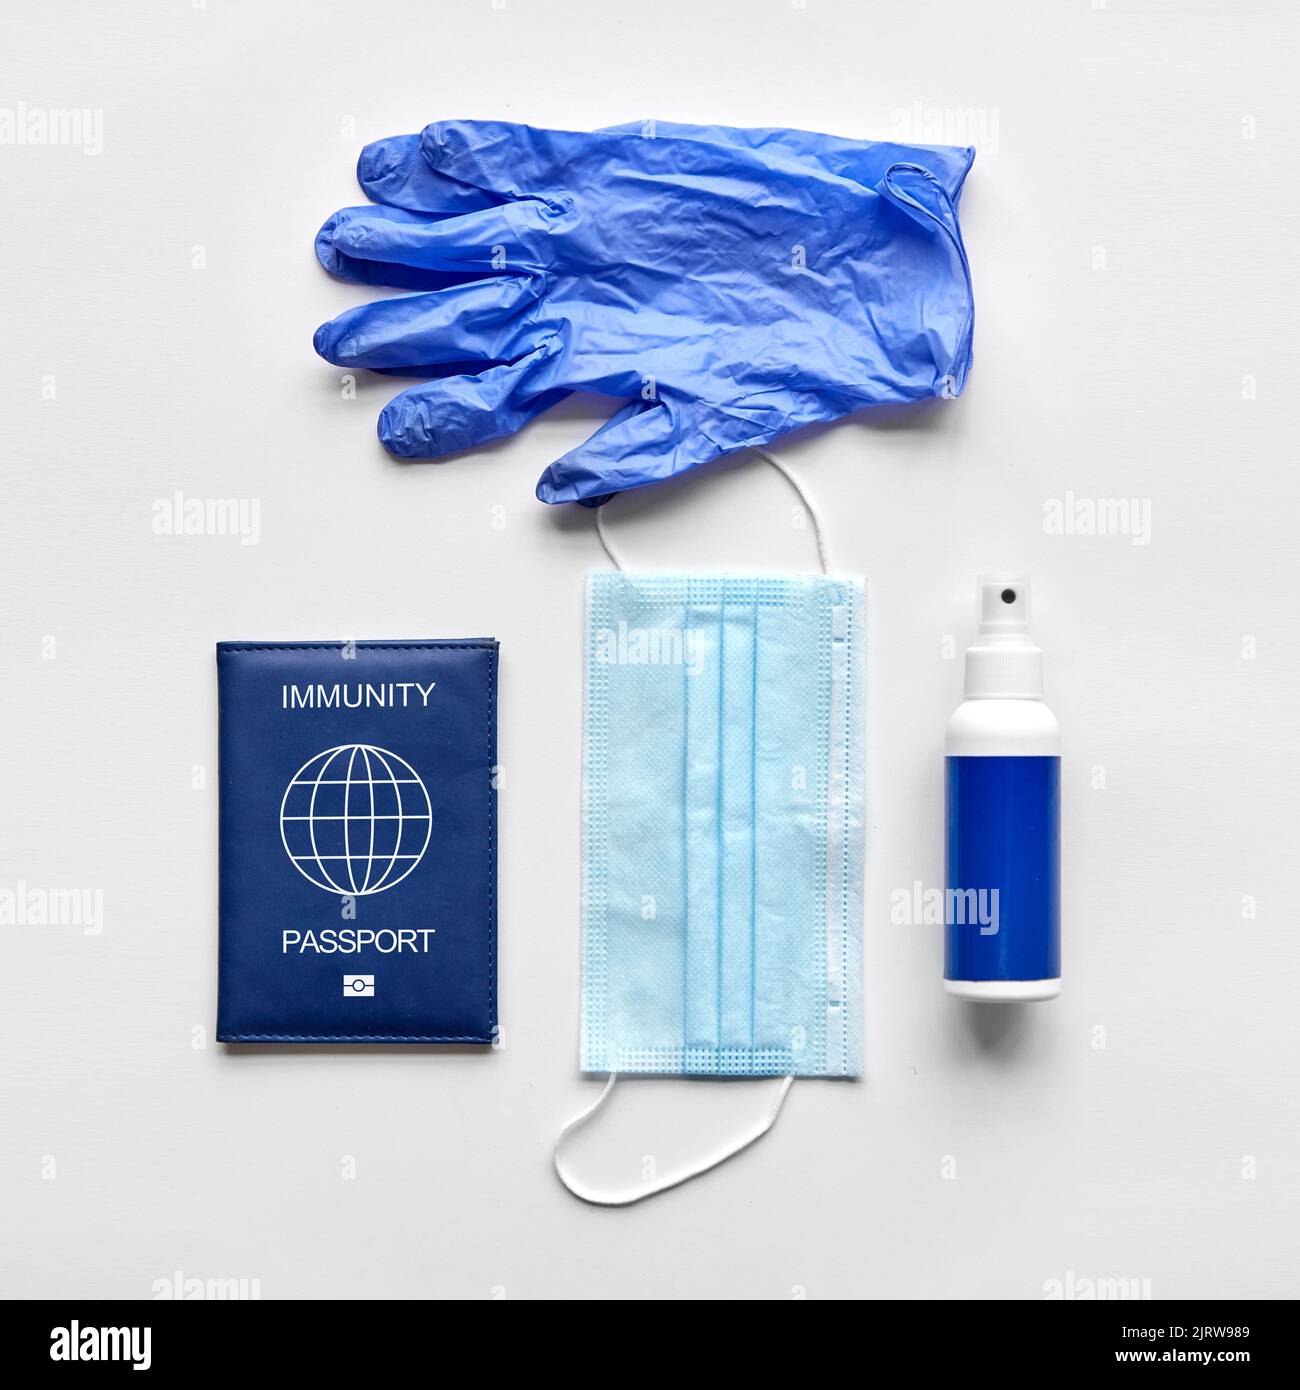 passeport d'immunité, masque, gants et désinfectant pour les mains Banque D'Images